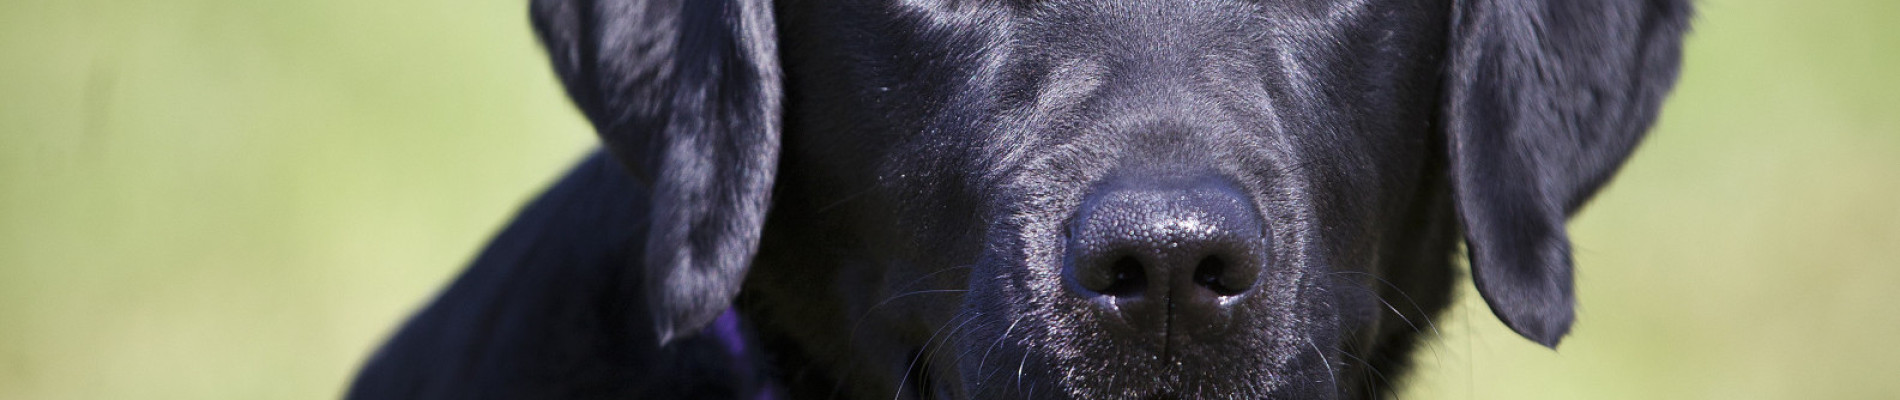 Foto van zittende zwarte labrador in paar kngf-tuig die je aankijkt